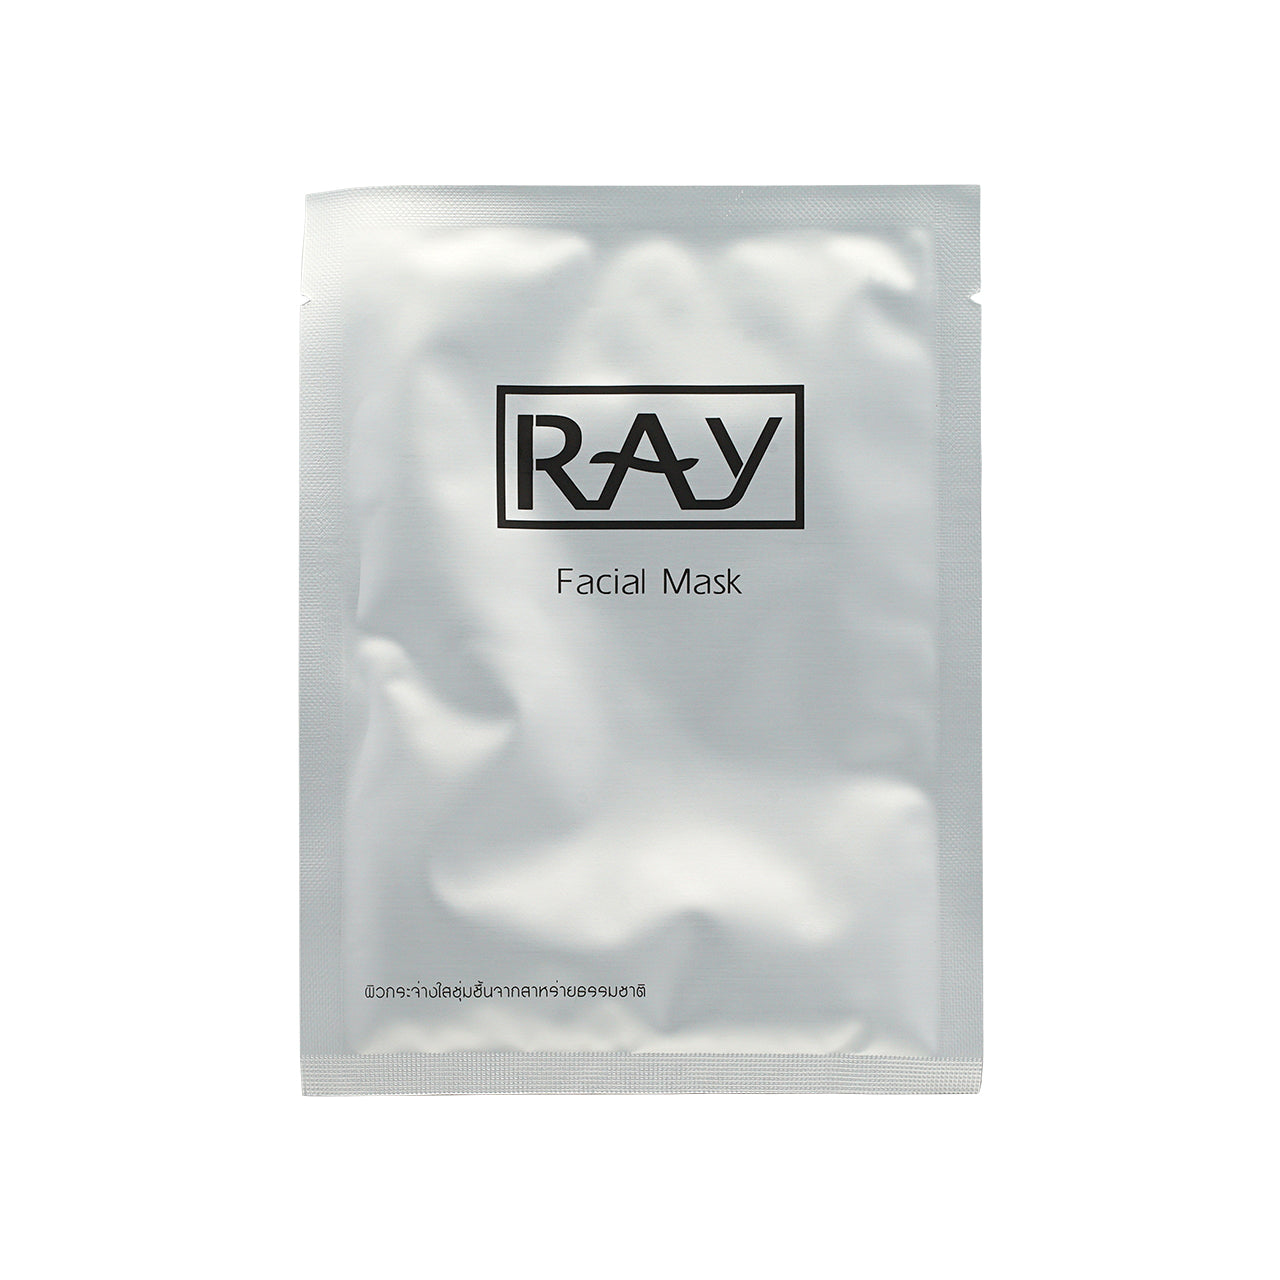 Ray Facial Mask Silver 10PCS | Sasa Global eShop